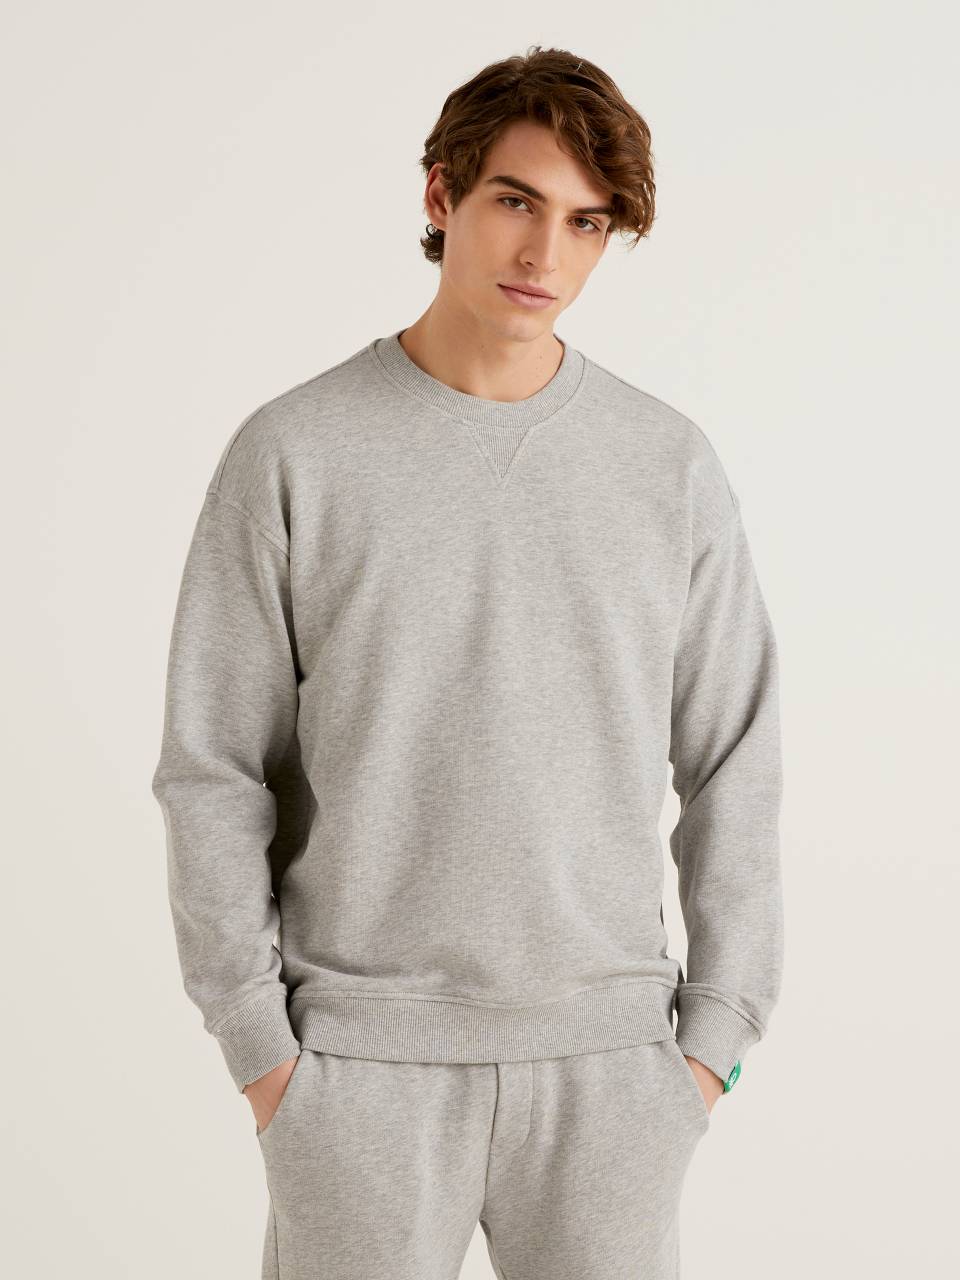 Benetton 100% cotton pullover sweatshirt. 1